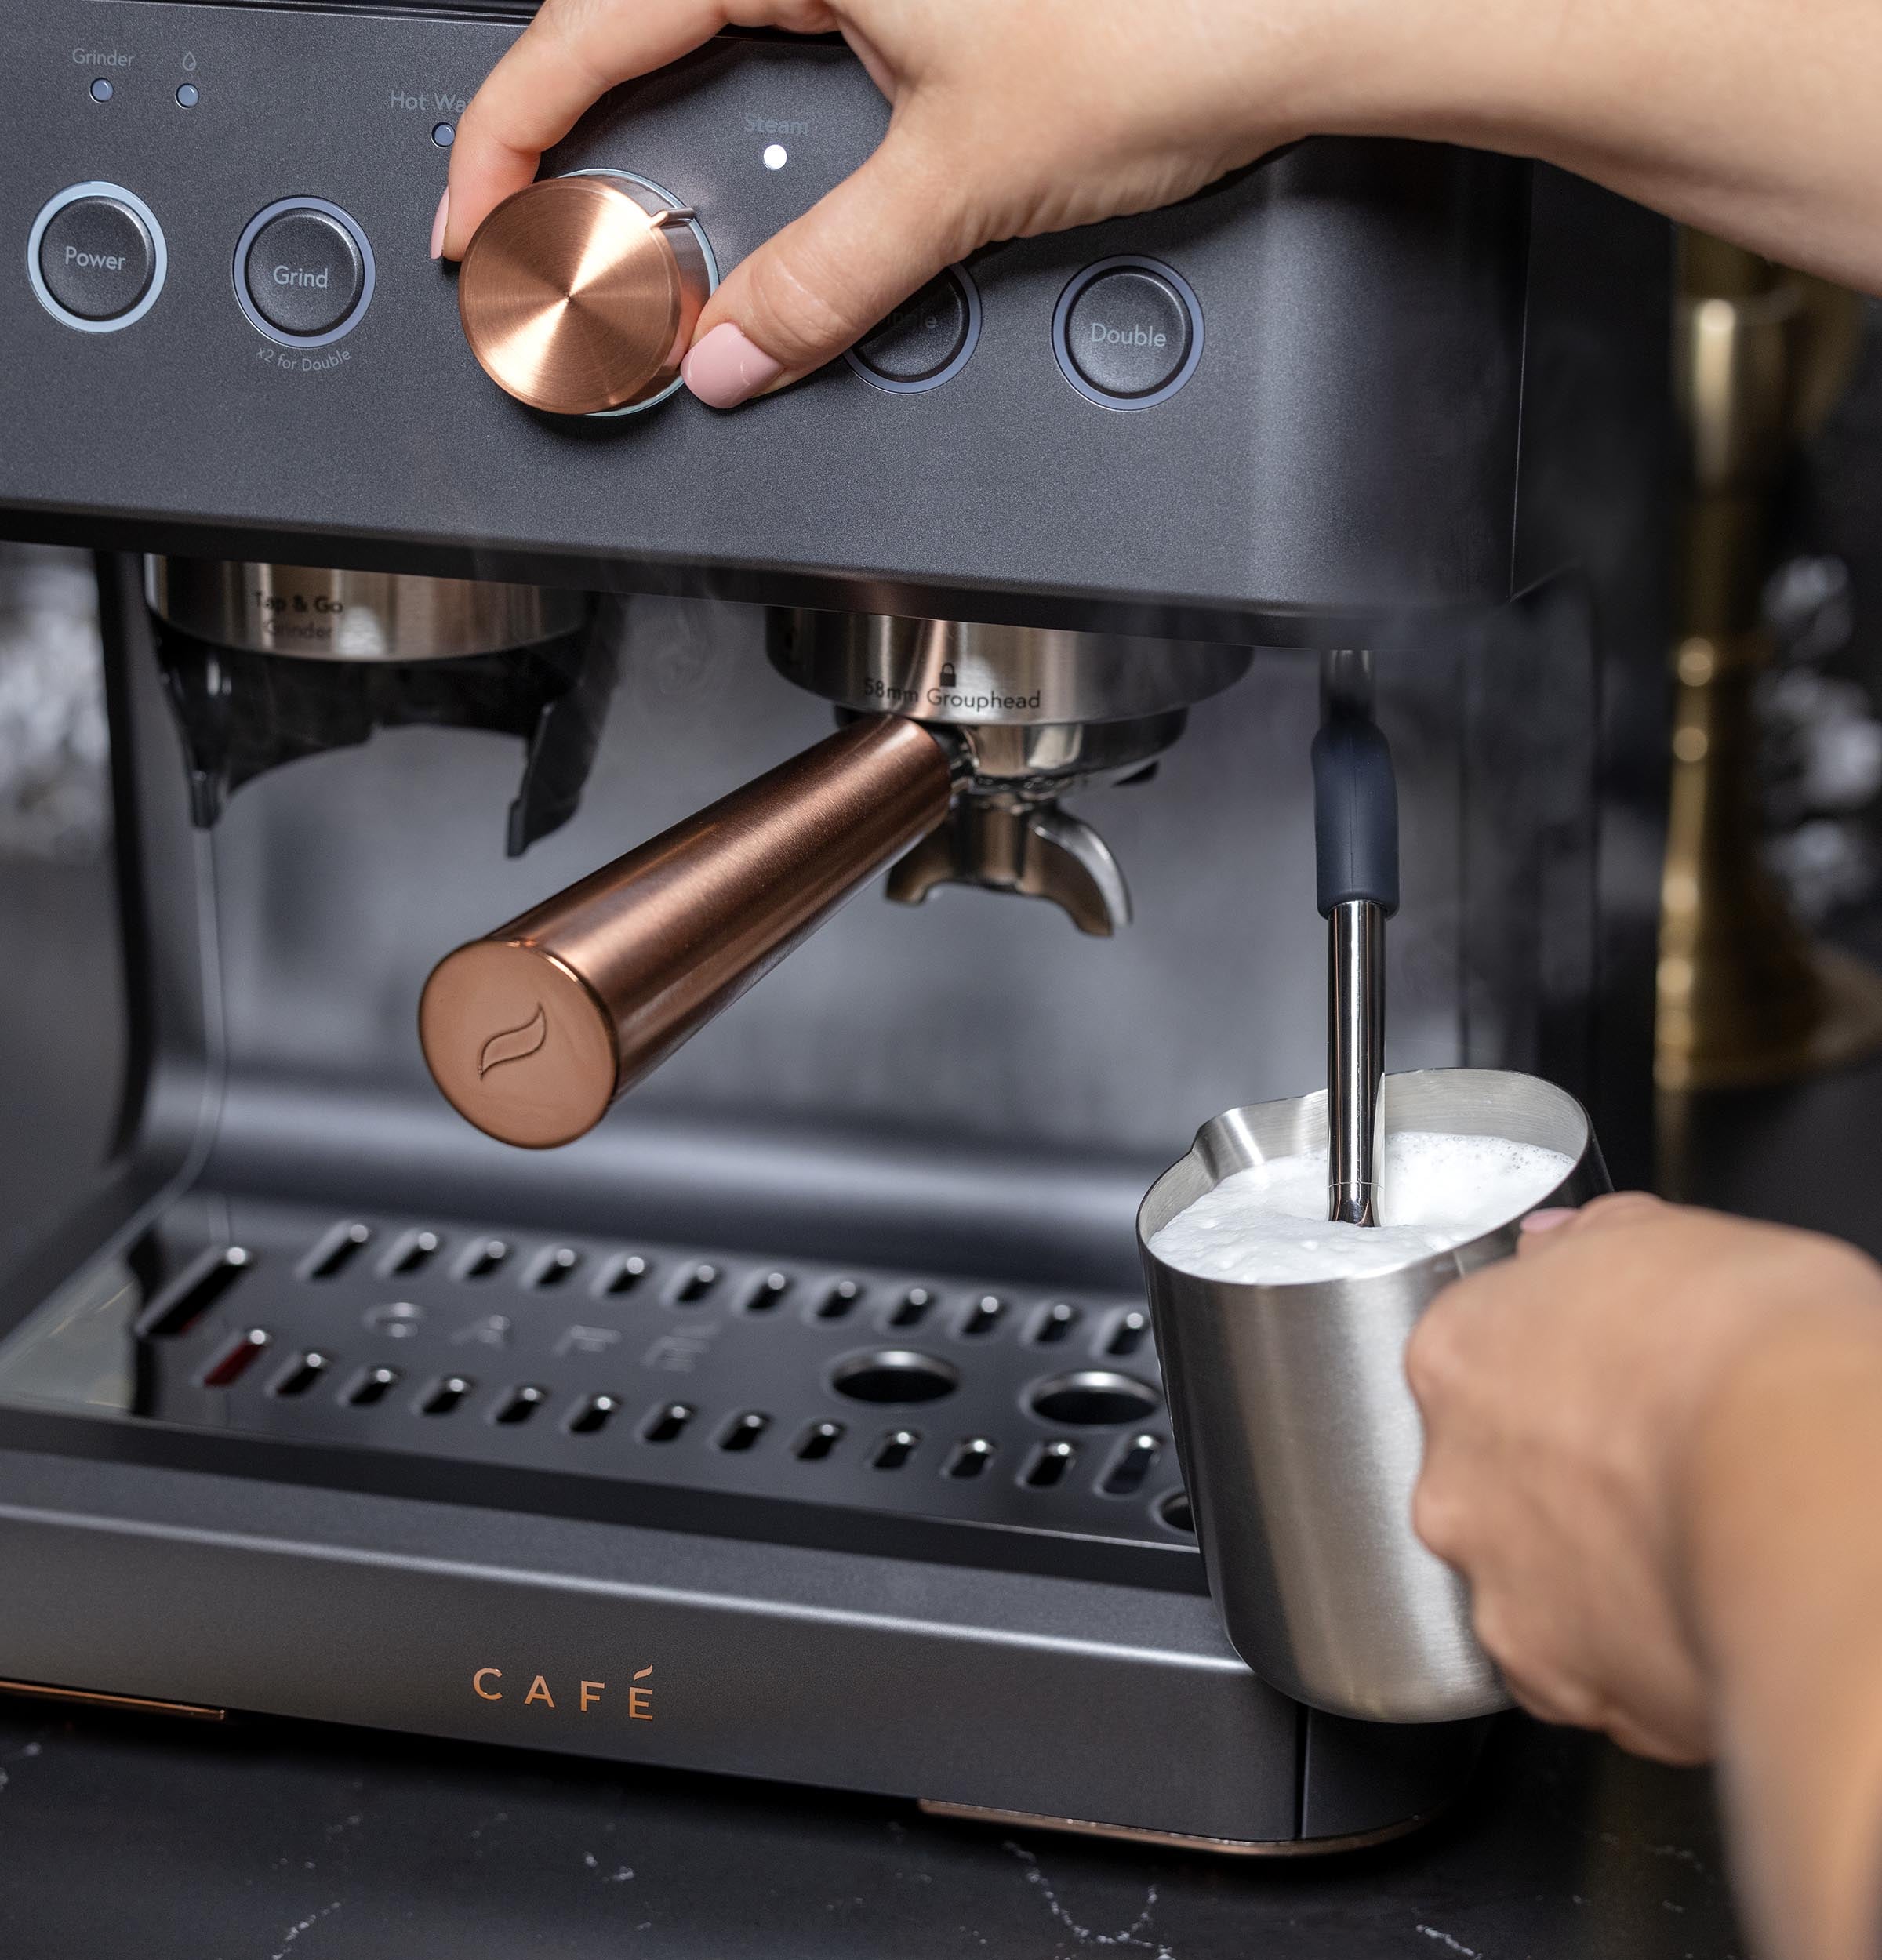 dsp hot sale automatic espresso coffee